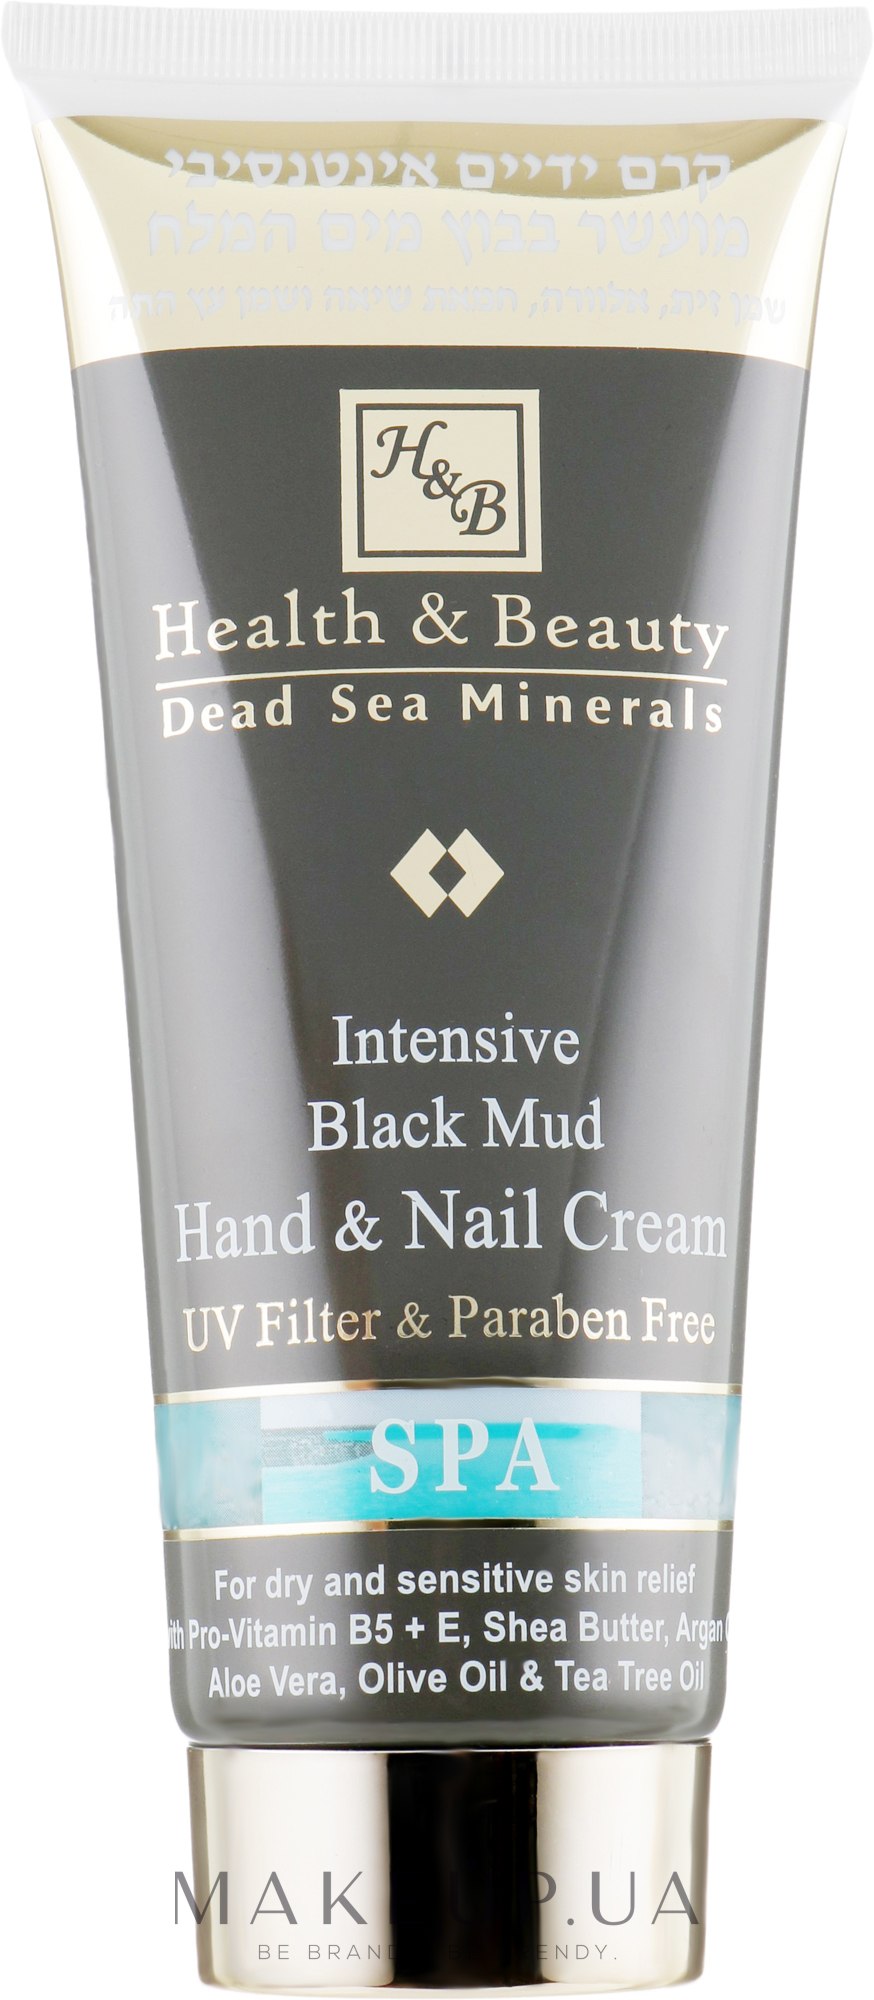 Интенсивный крем для рук и ногтей с грязью Мертвого моря - Health and Beauty Intensive Dlack Mud Hands & Nails Cream — фото 200ml